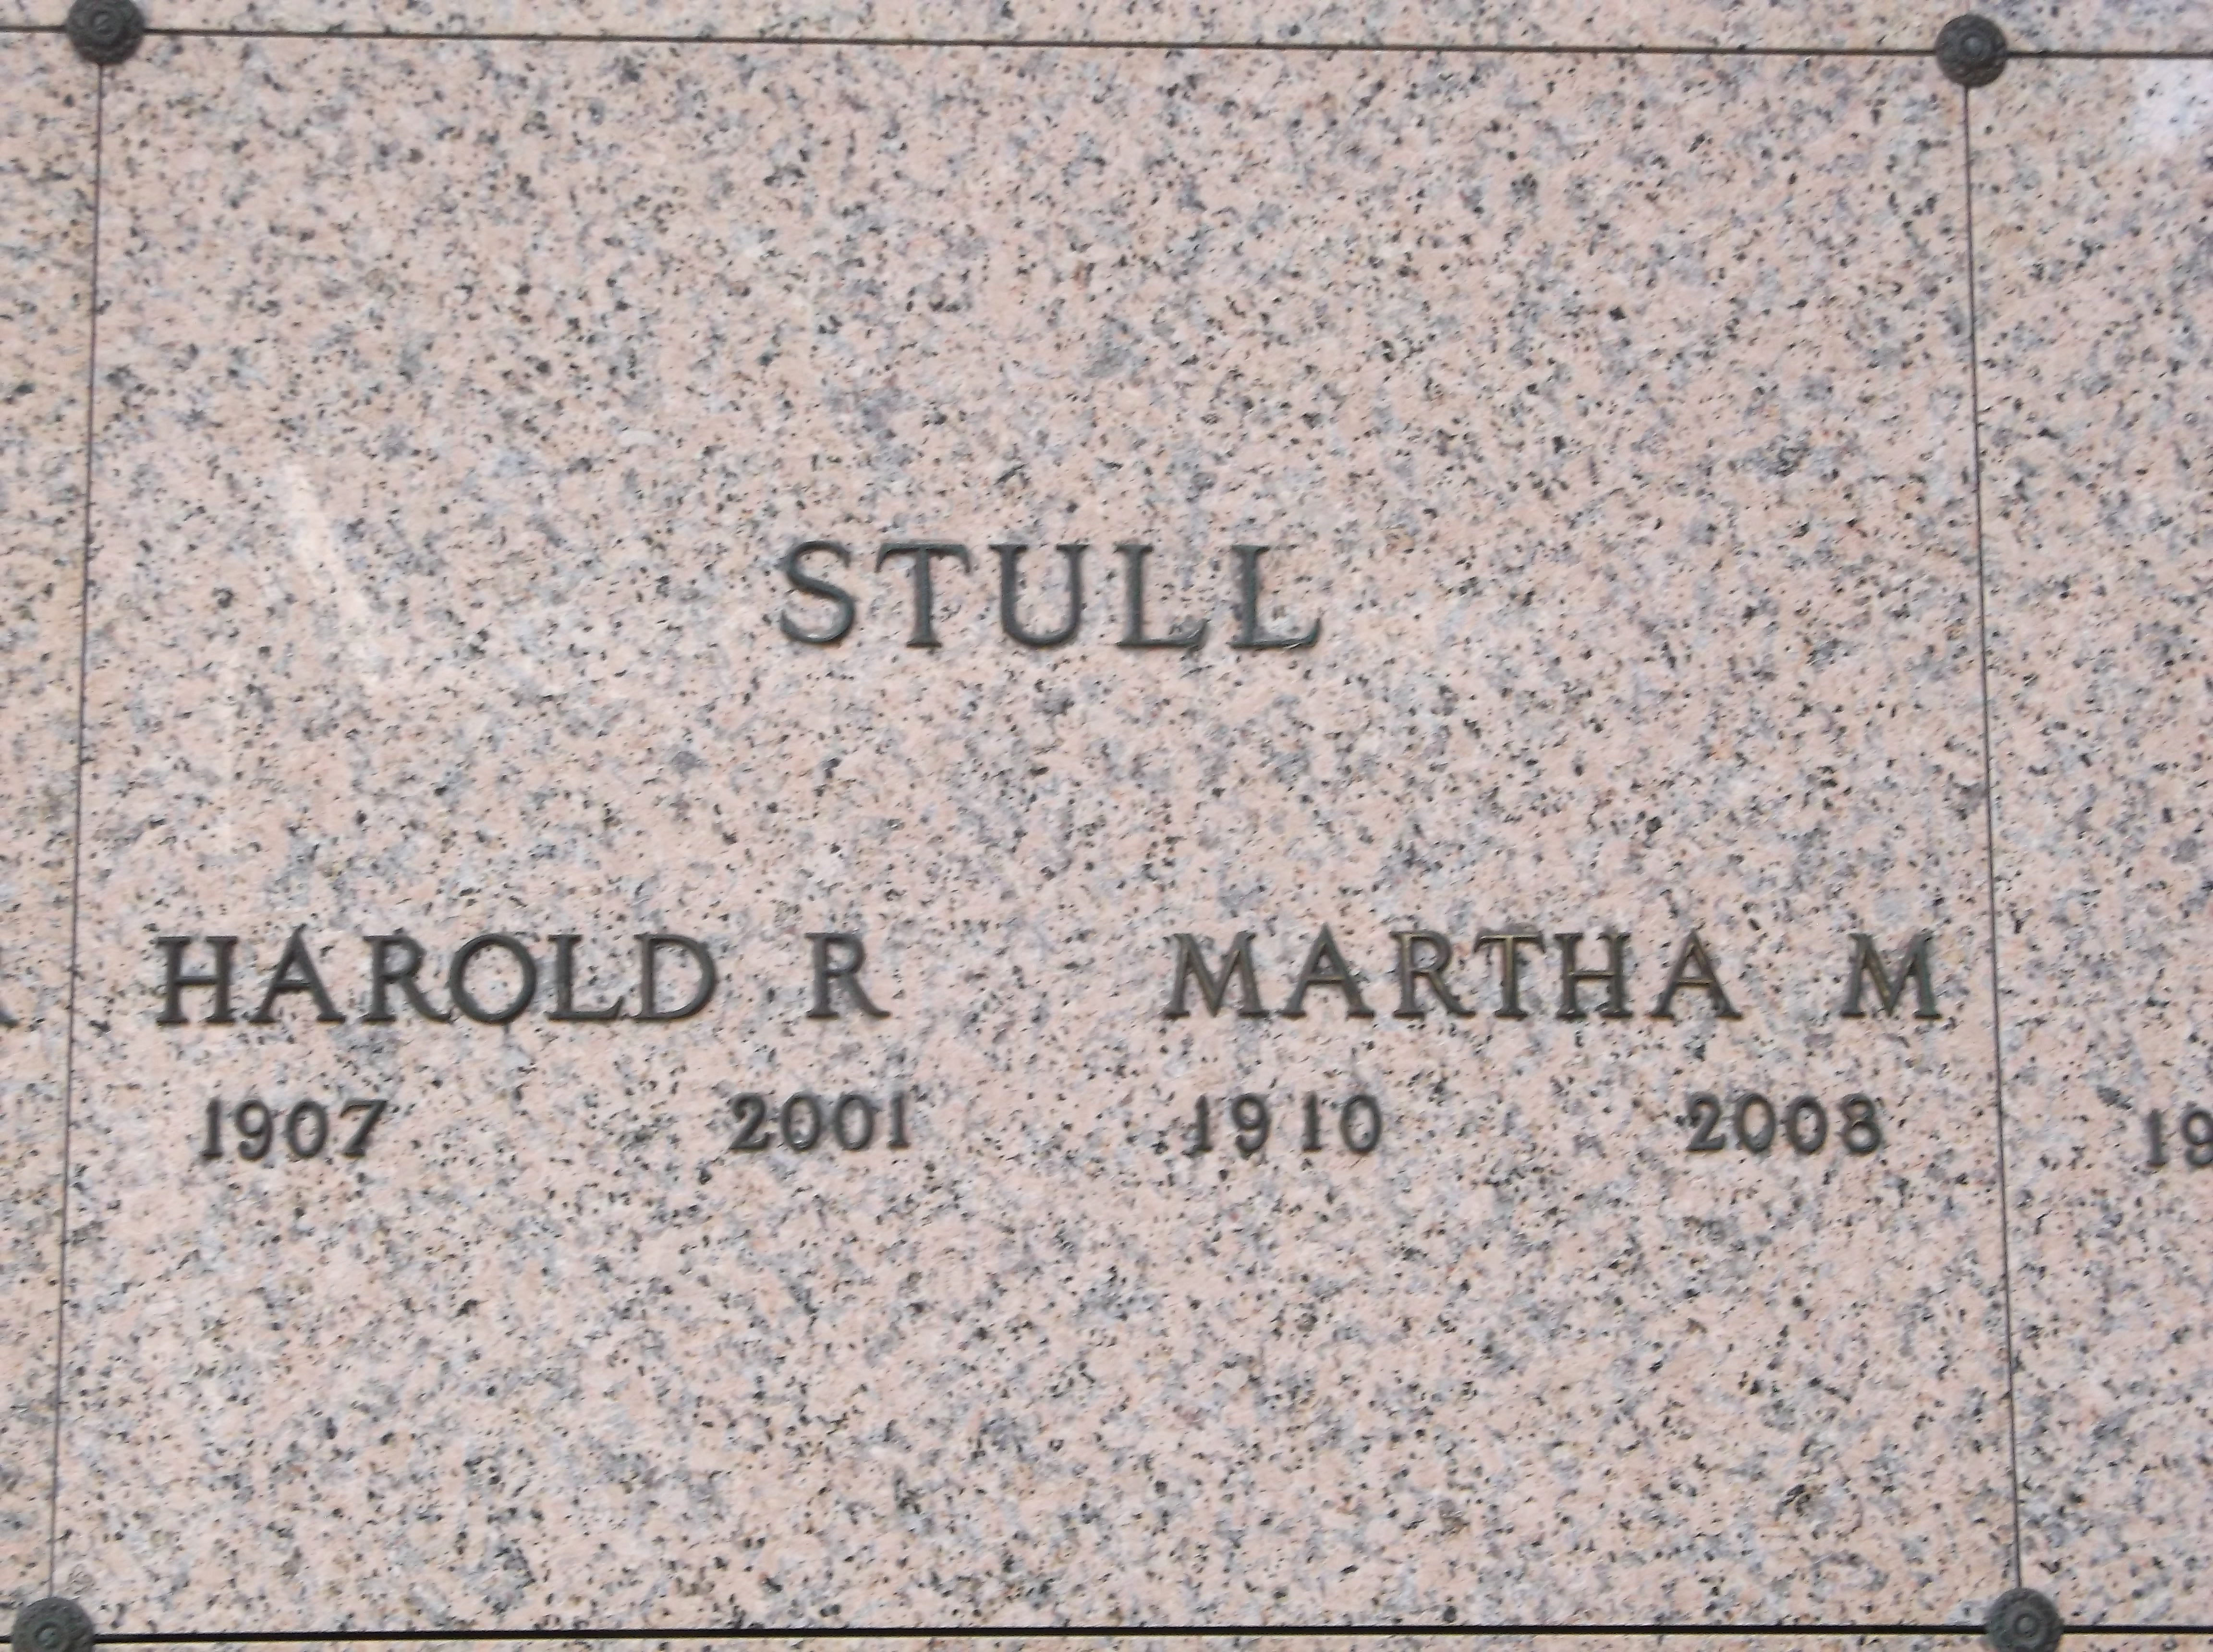 Harold R Stull